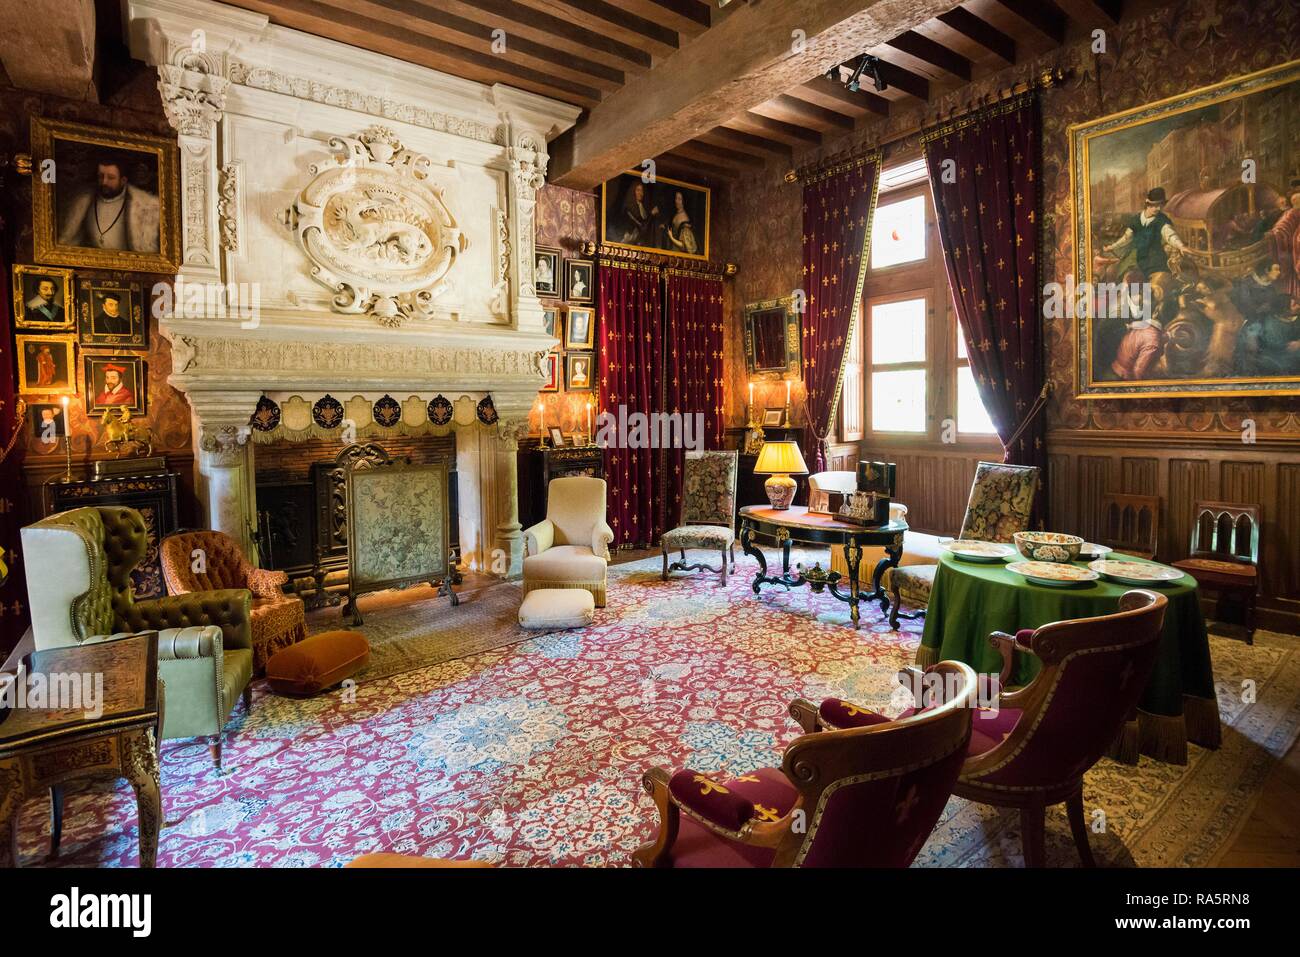 Historical living room, salon, Chateau Azay-le-Rideau, Renaissance castle on the Loire, UNESCO World Heritage Site Stock Photo